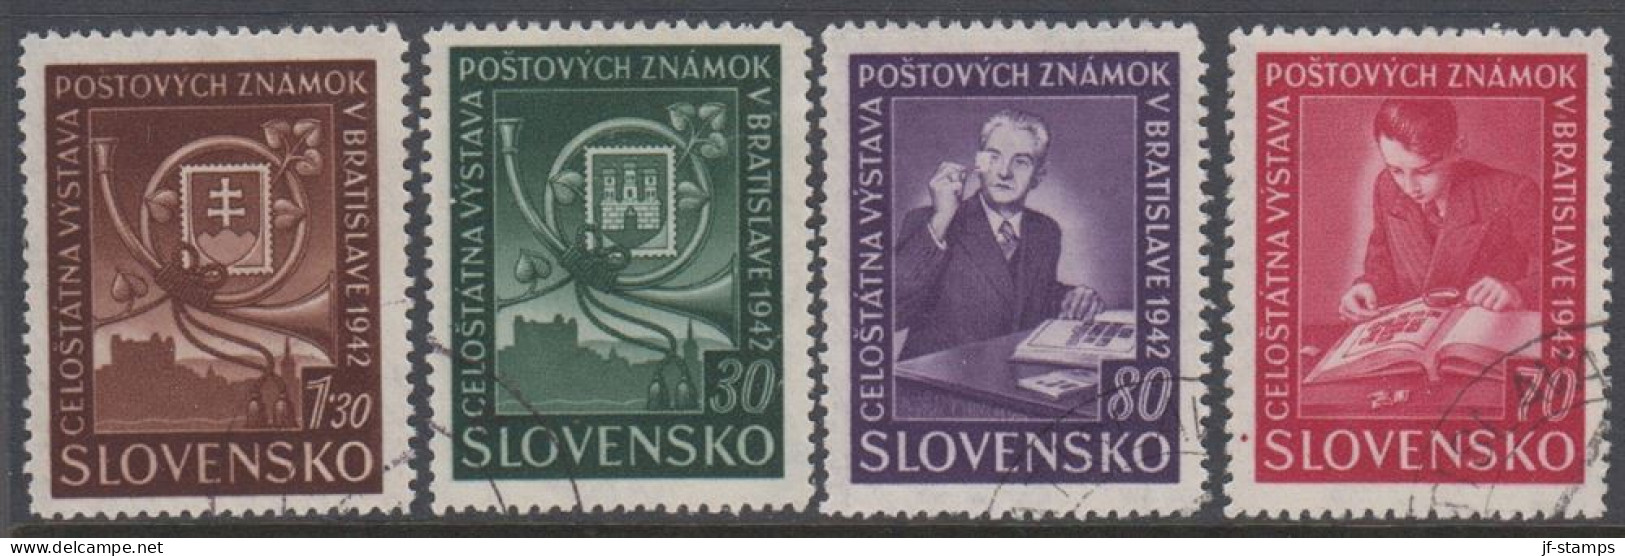 1942. SLOVENSKO Stamp Show. Complete Set Of 4 Stamps.  (Michel 98-101) - JF418428 - Gebruikt